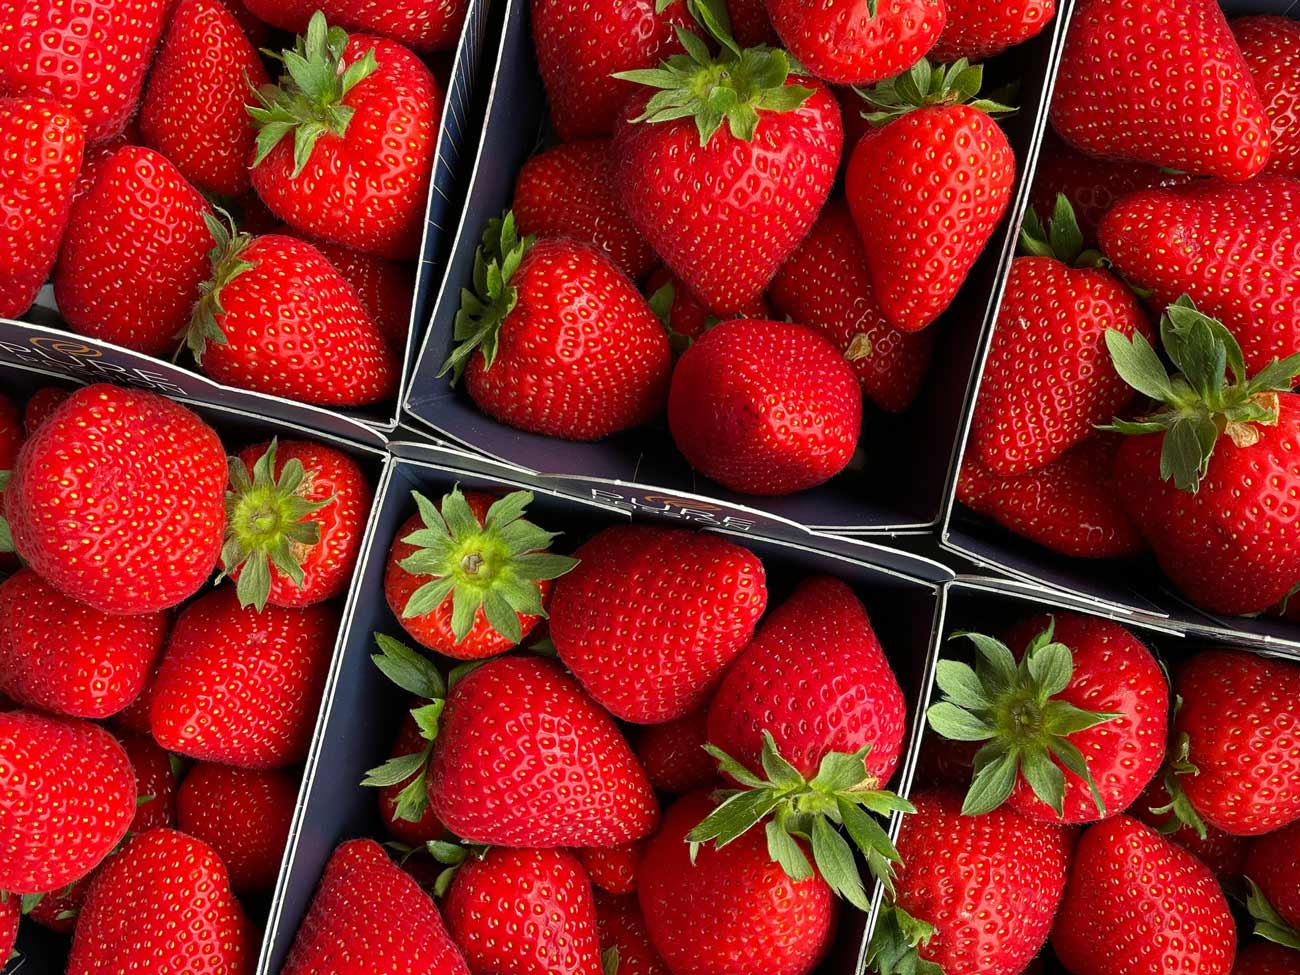 Les fraises sont bourrées de pesticides : voici 4 astuces pour les nettoyer.